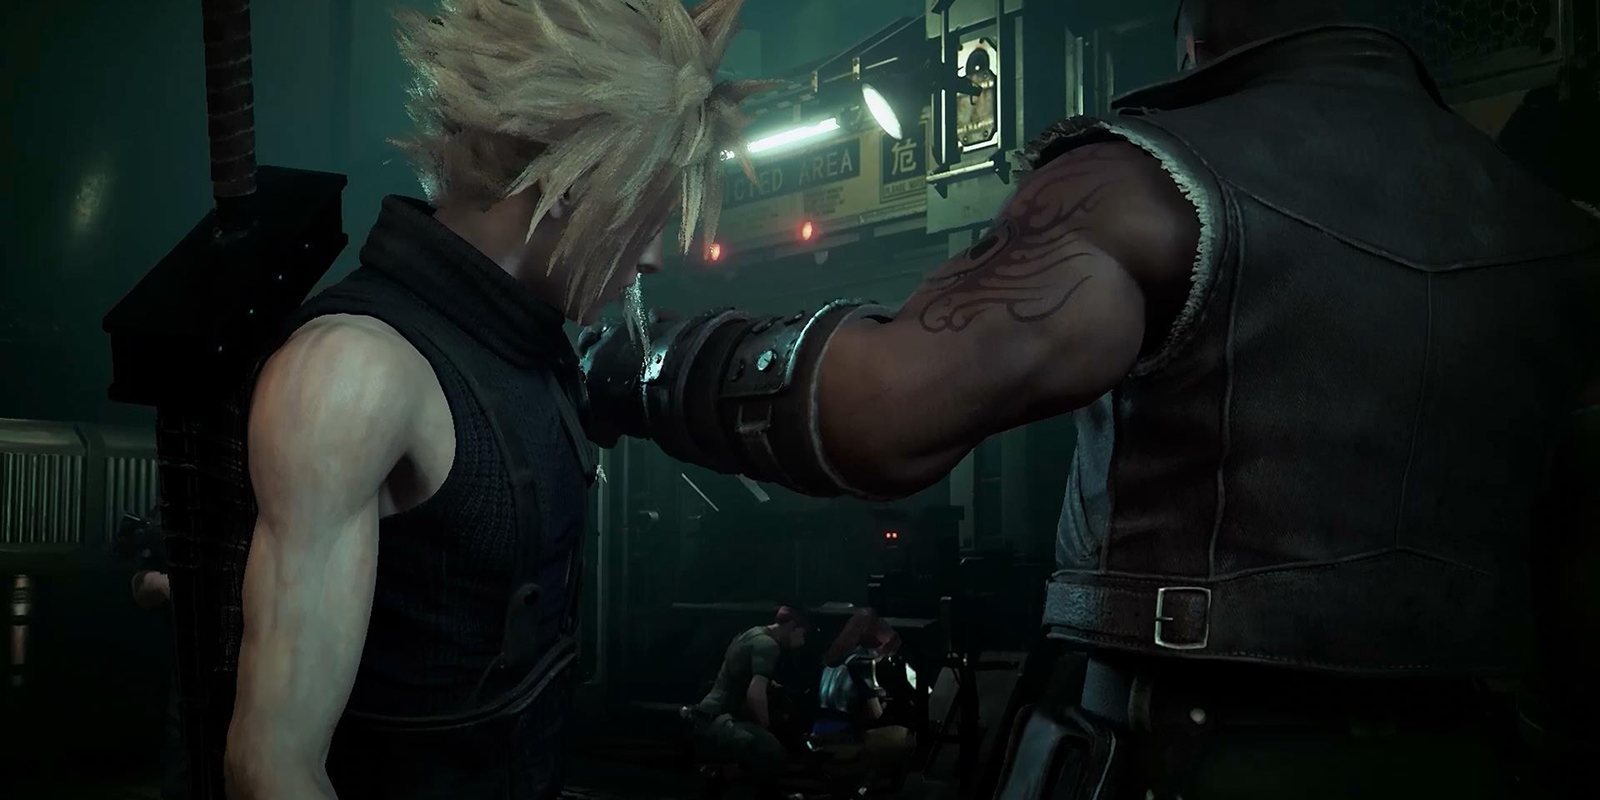 Nomura asegura que veremos más 'Final Fantasy VII Remake' tras 'Kingdom Hearts III'